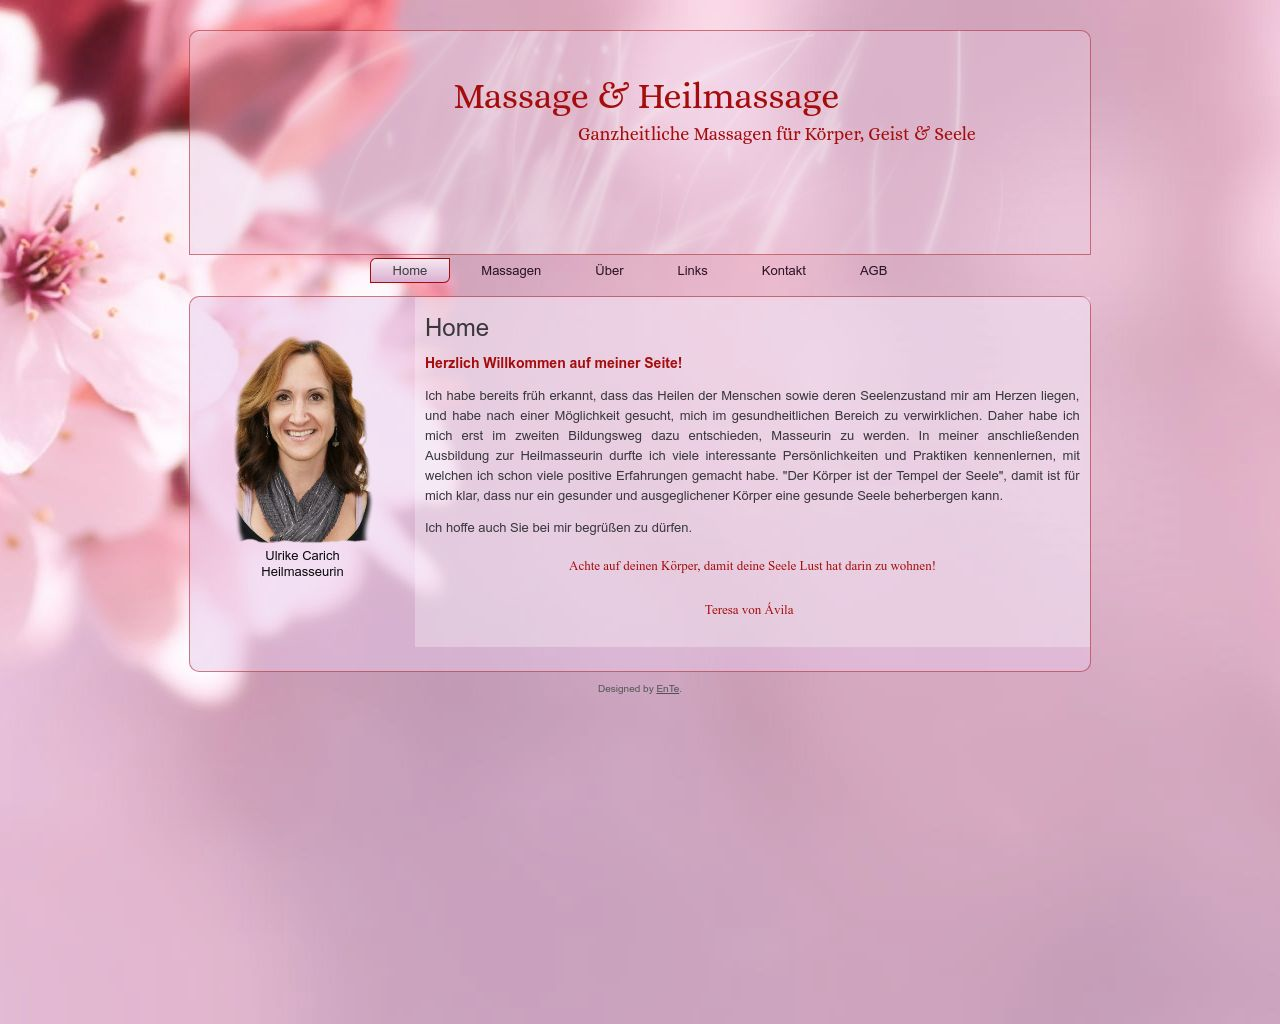 Bild Website massage-teber.at in 1280x1024